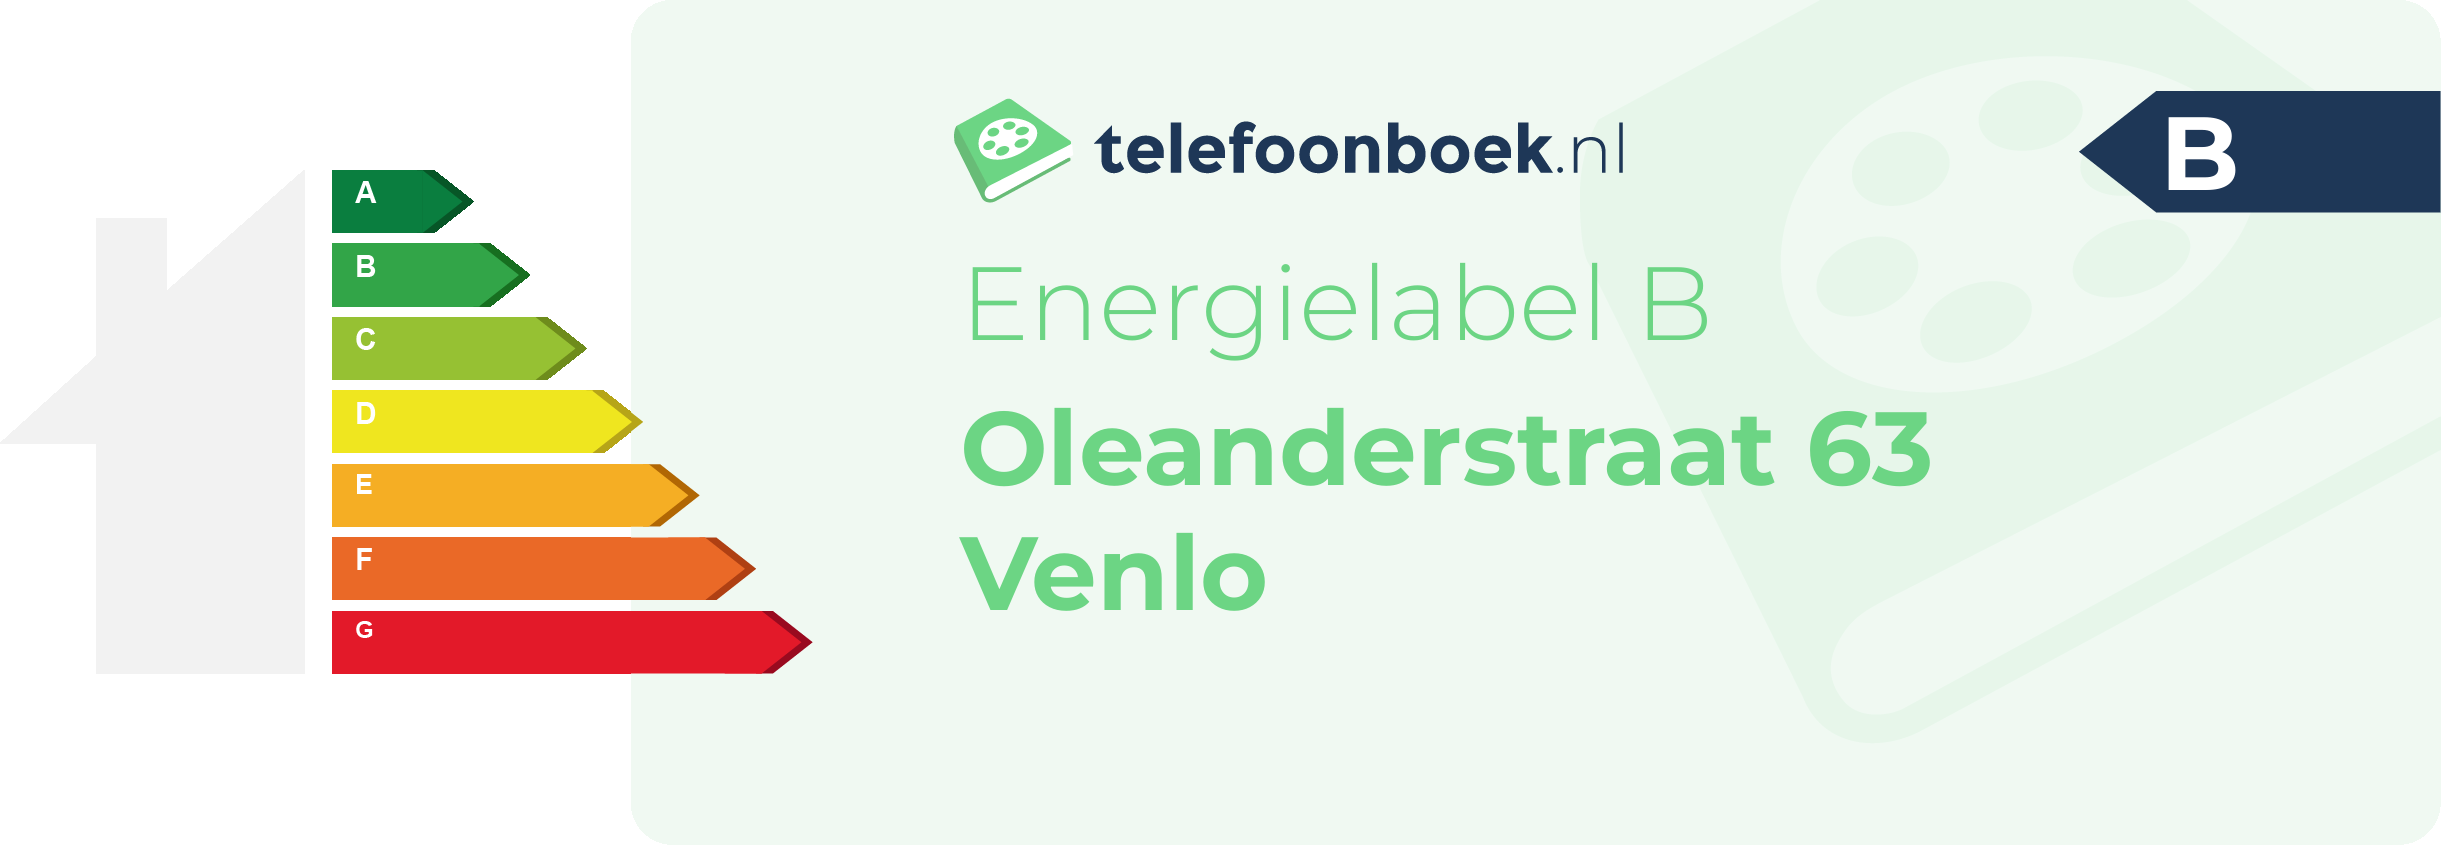 Energielabel Oleanderstraat 63 Venlo